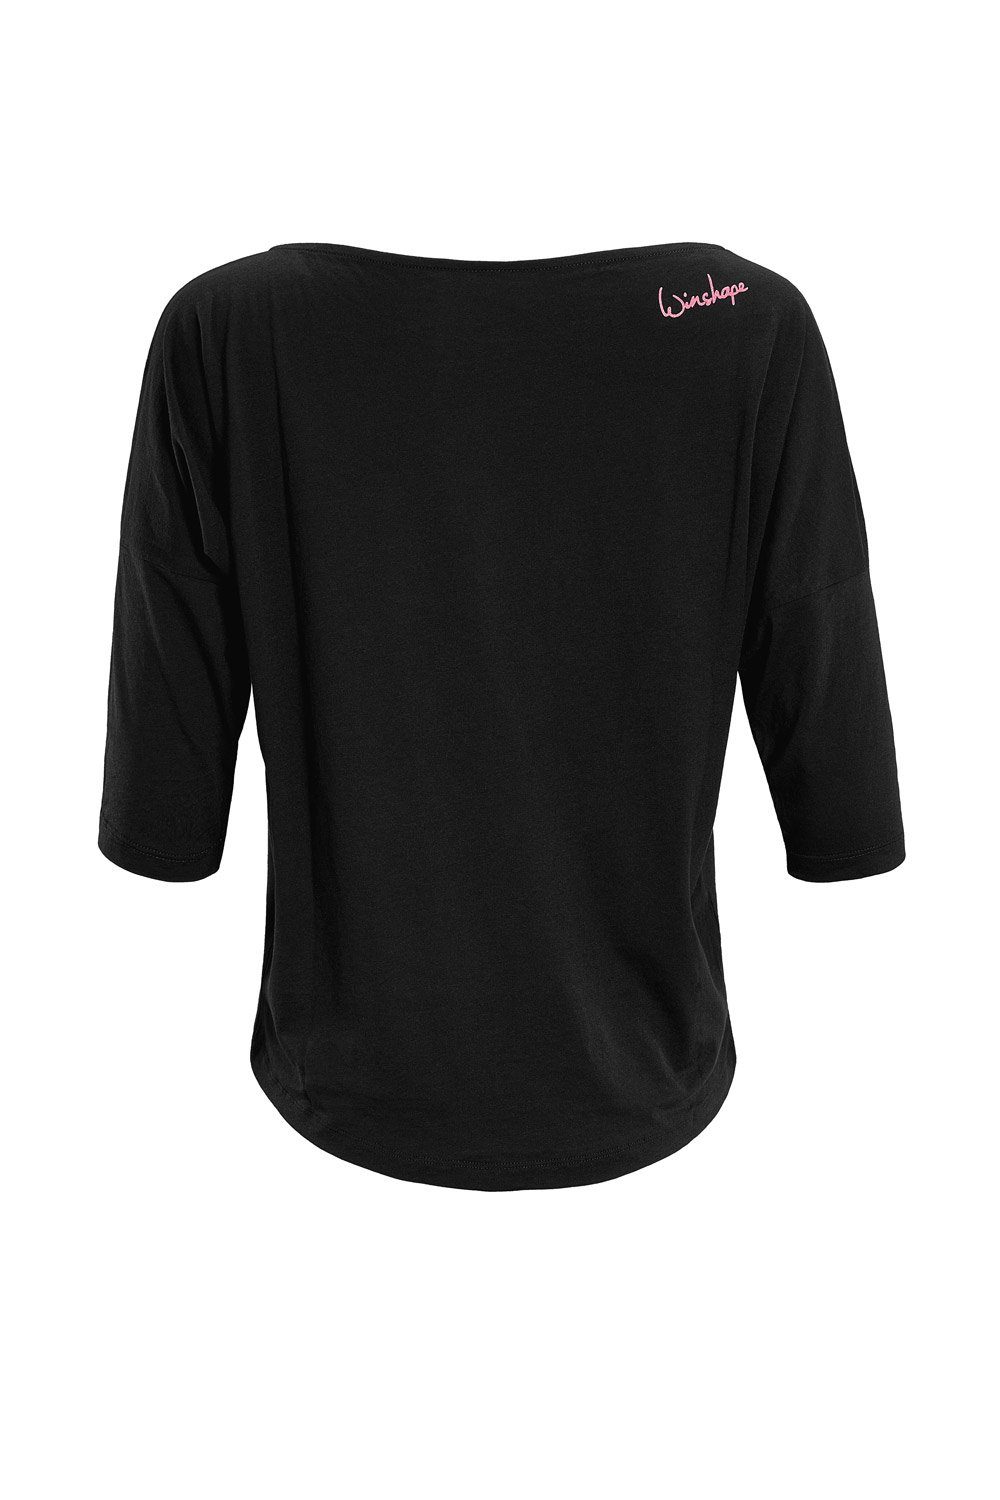 Neon Winshape 3/4-Arm-Shirt pinkem leicht MCS001 Glitzer-Aufdruck ultra mit